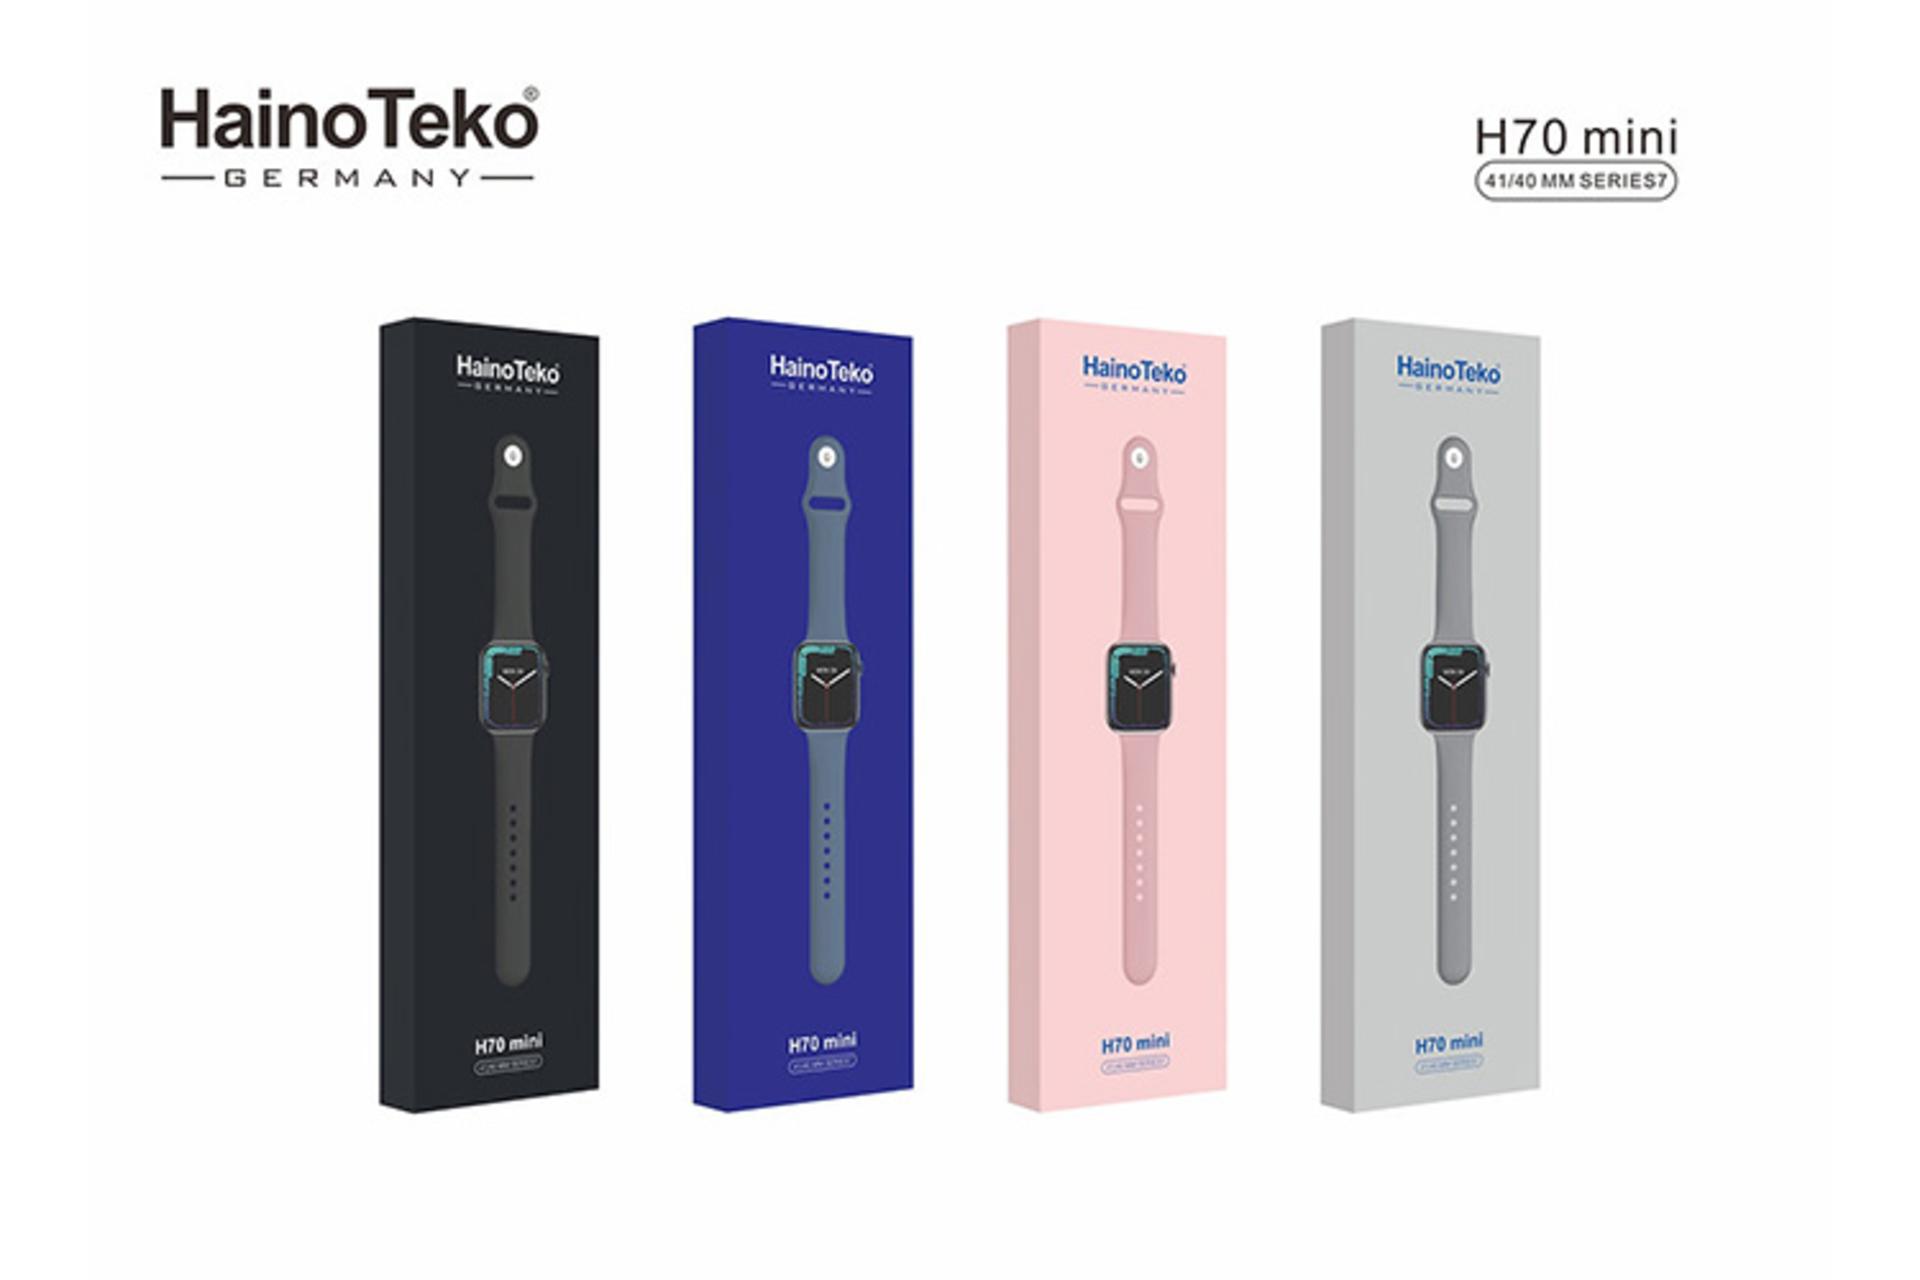 جعبه ساعت هوشمند هاینو تکو Haino Teko H70 Mini